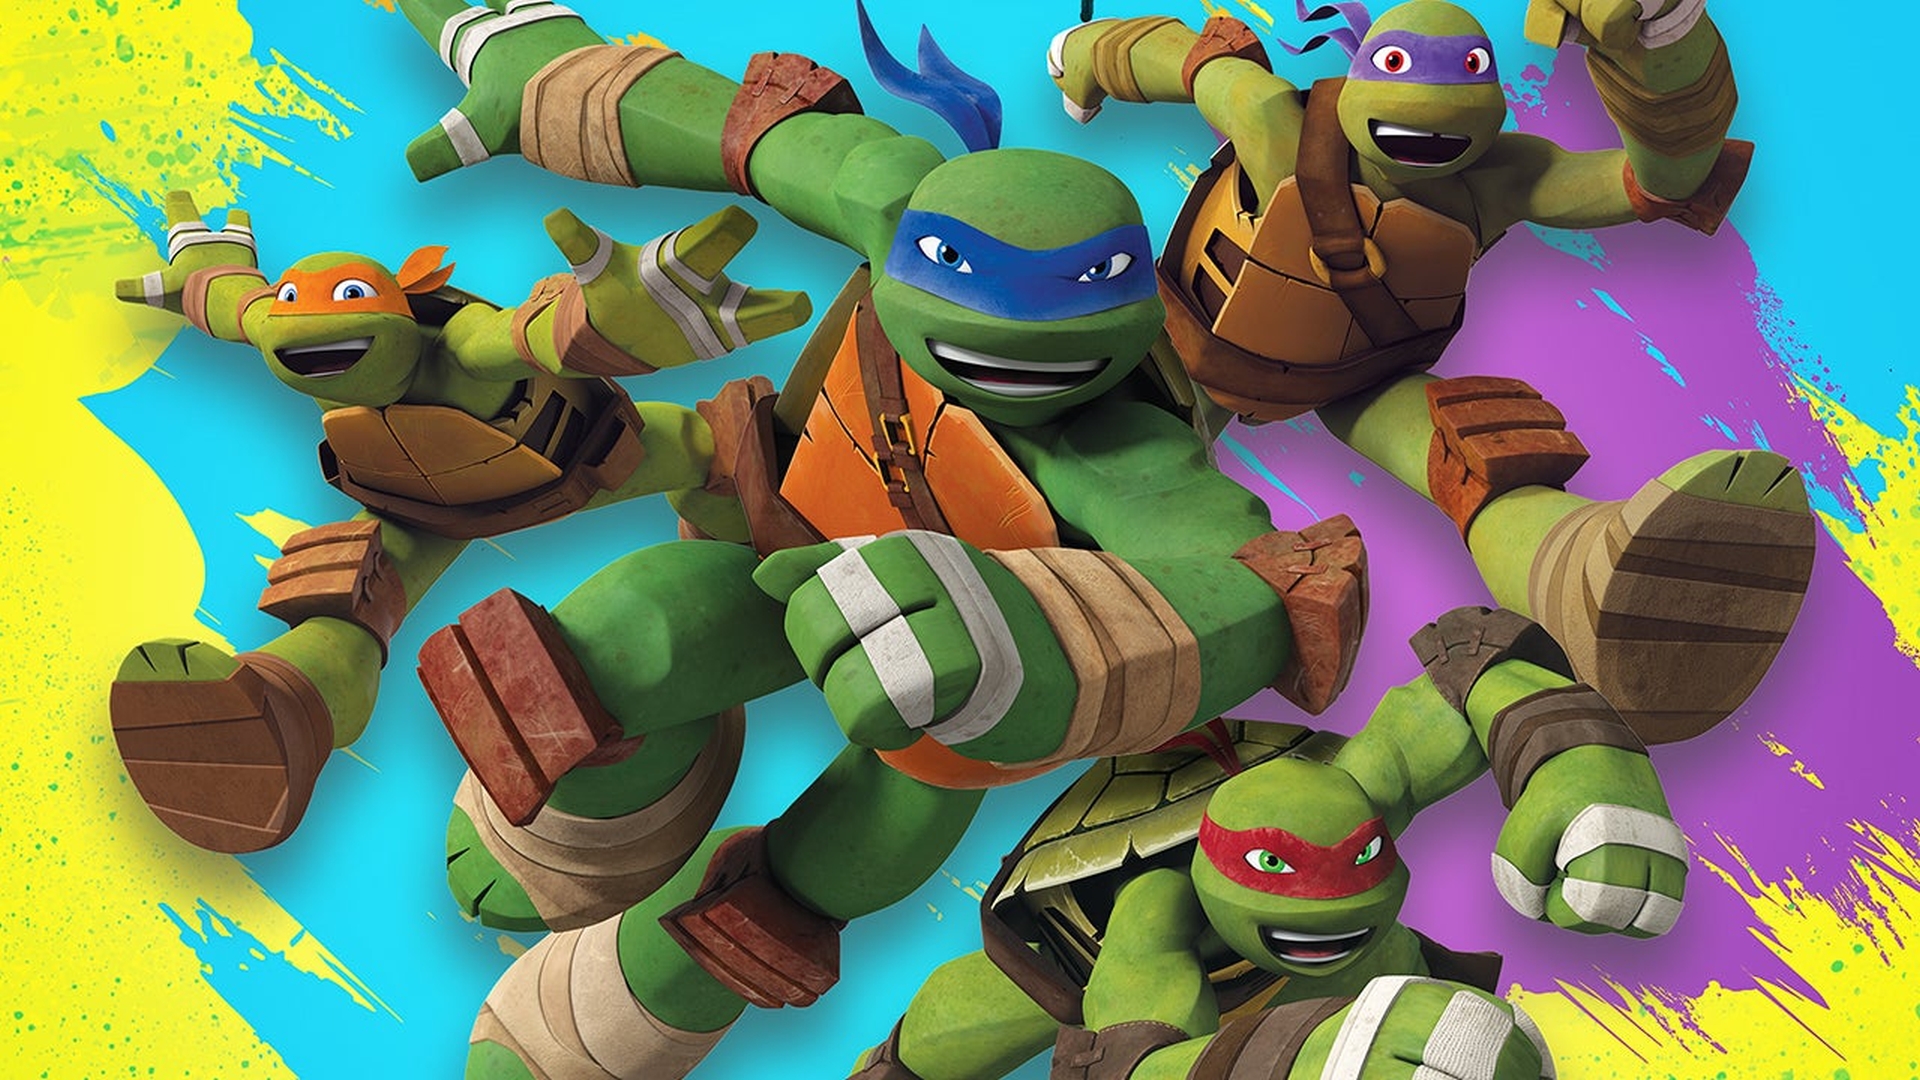 De release van Teenage Mutant Ninja Turtles Arcade: Wrath of the Mutants komt uit op 23 april